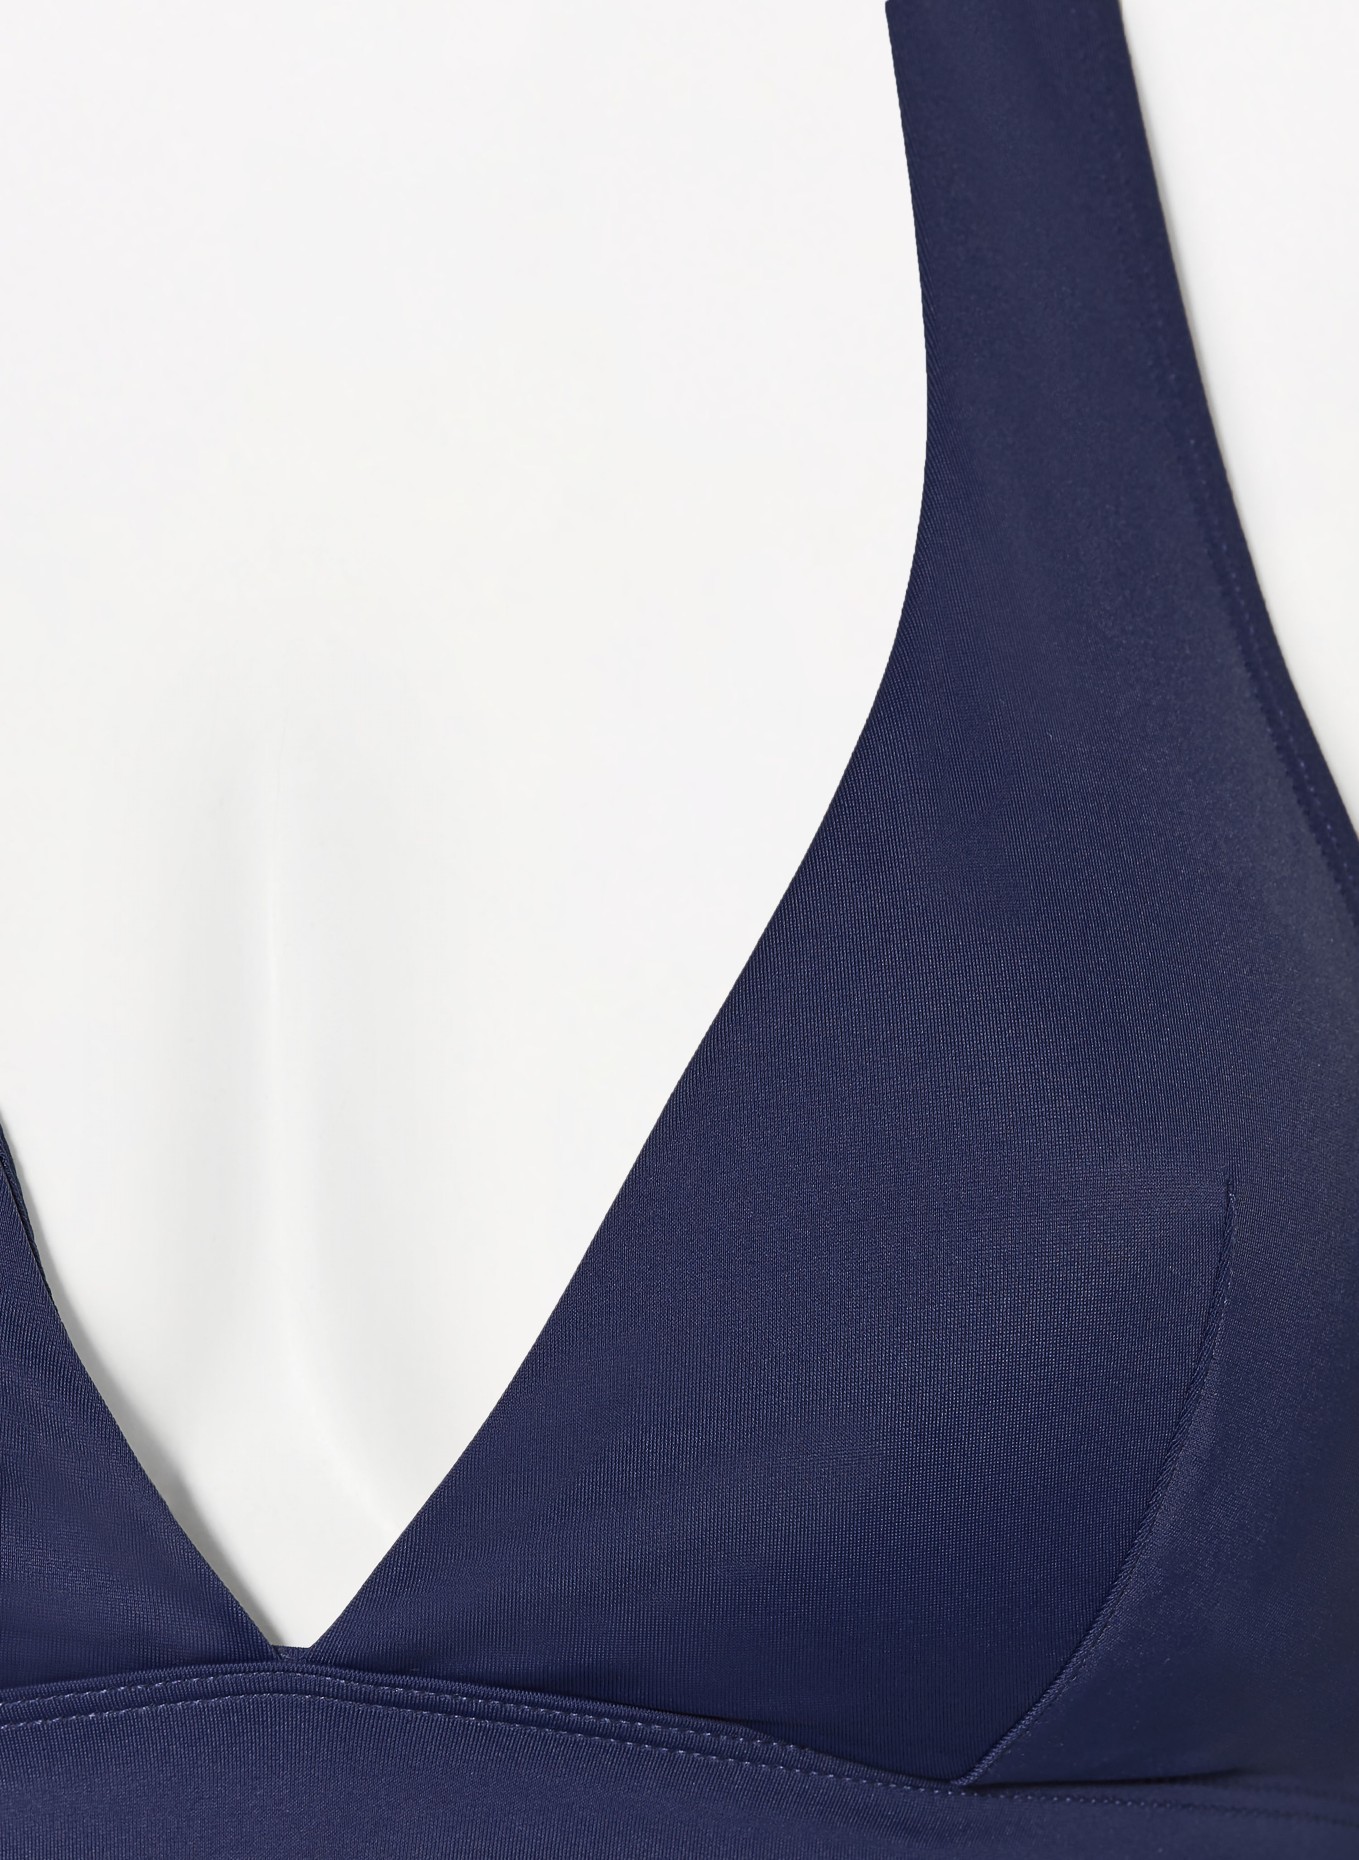 FEMILET Halter neck bikini top RIVERO, Color: DARK BLUE (Image 4)